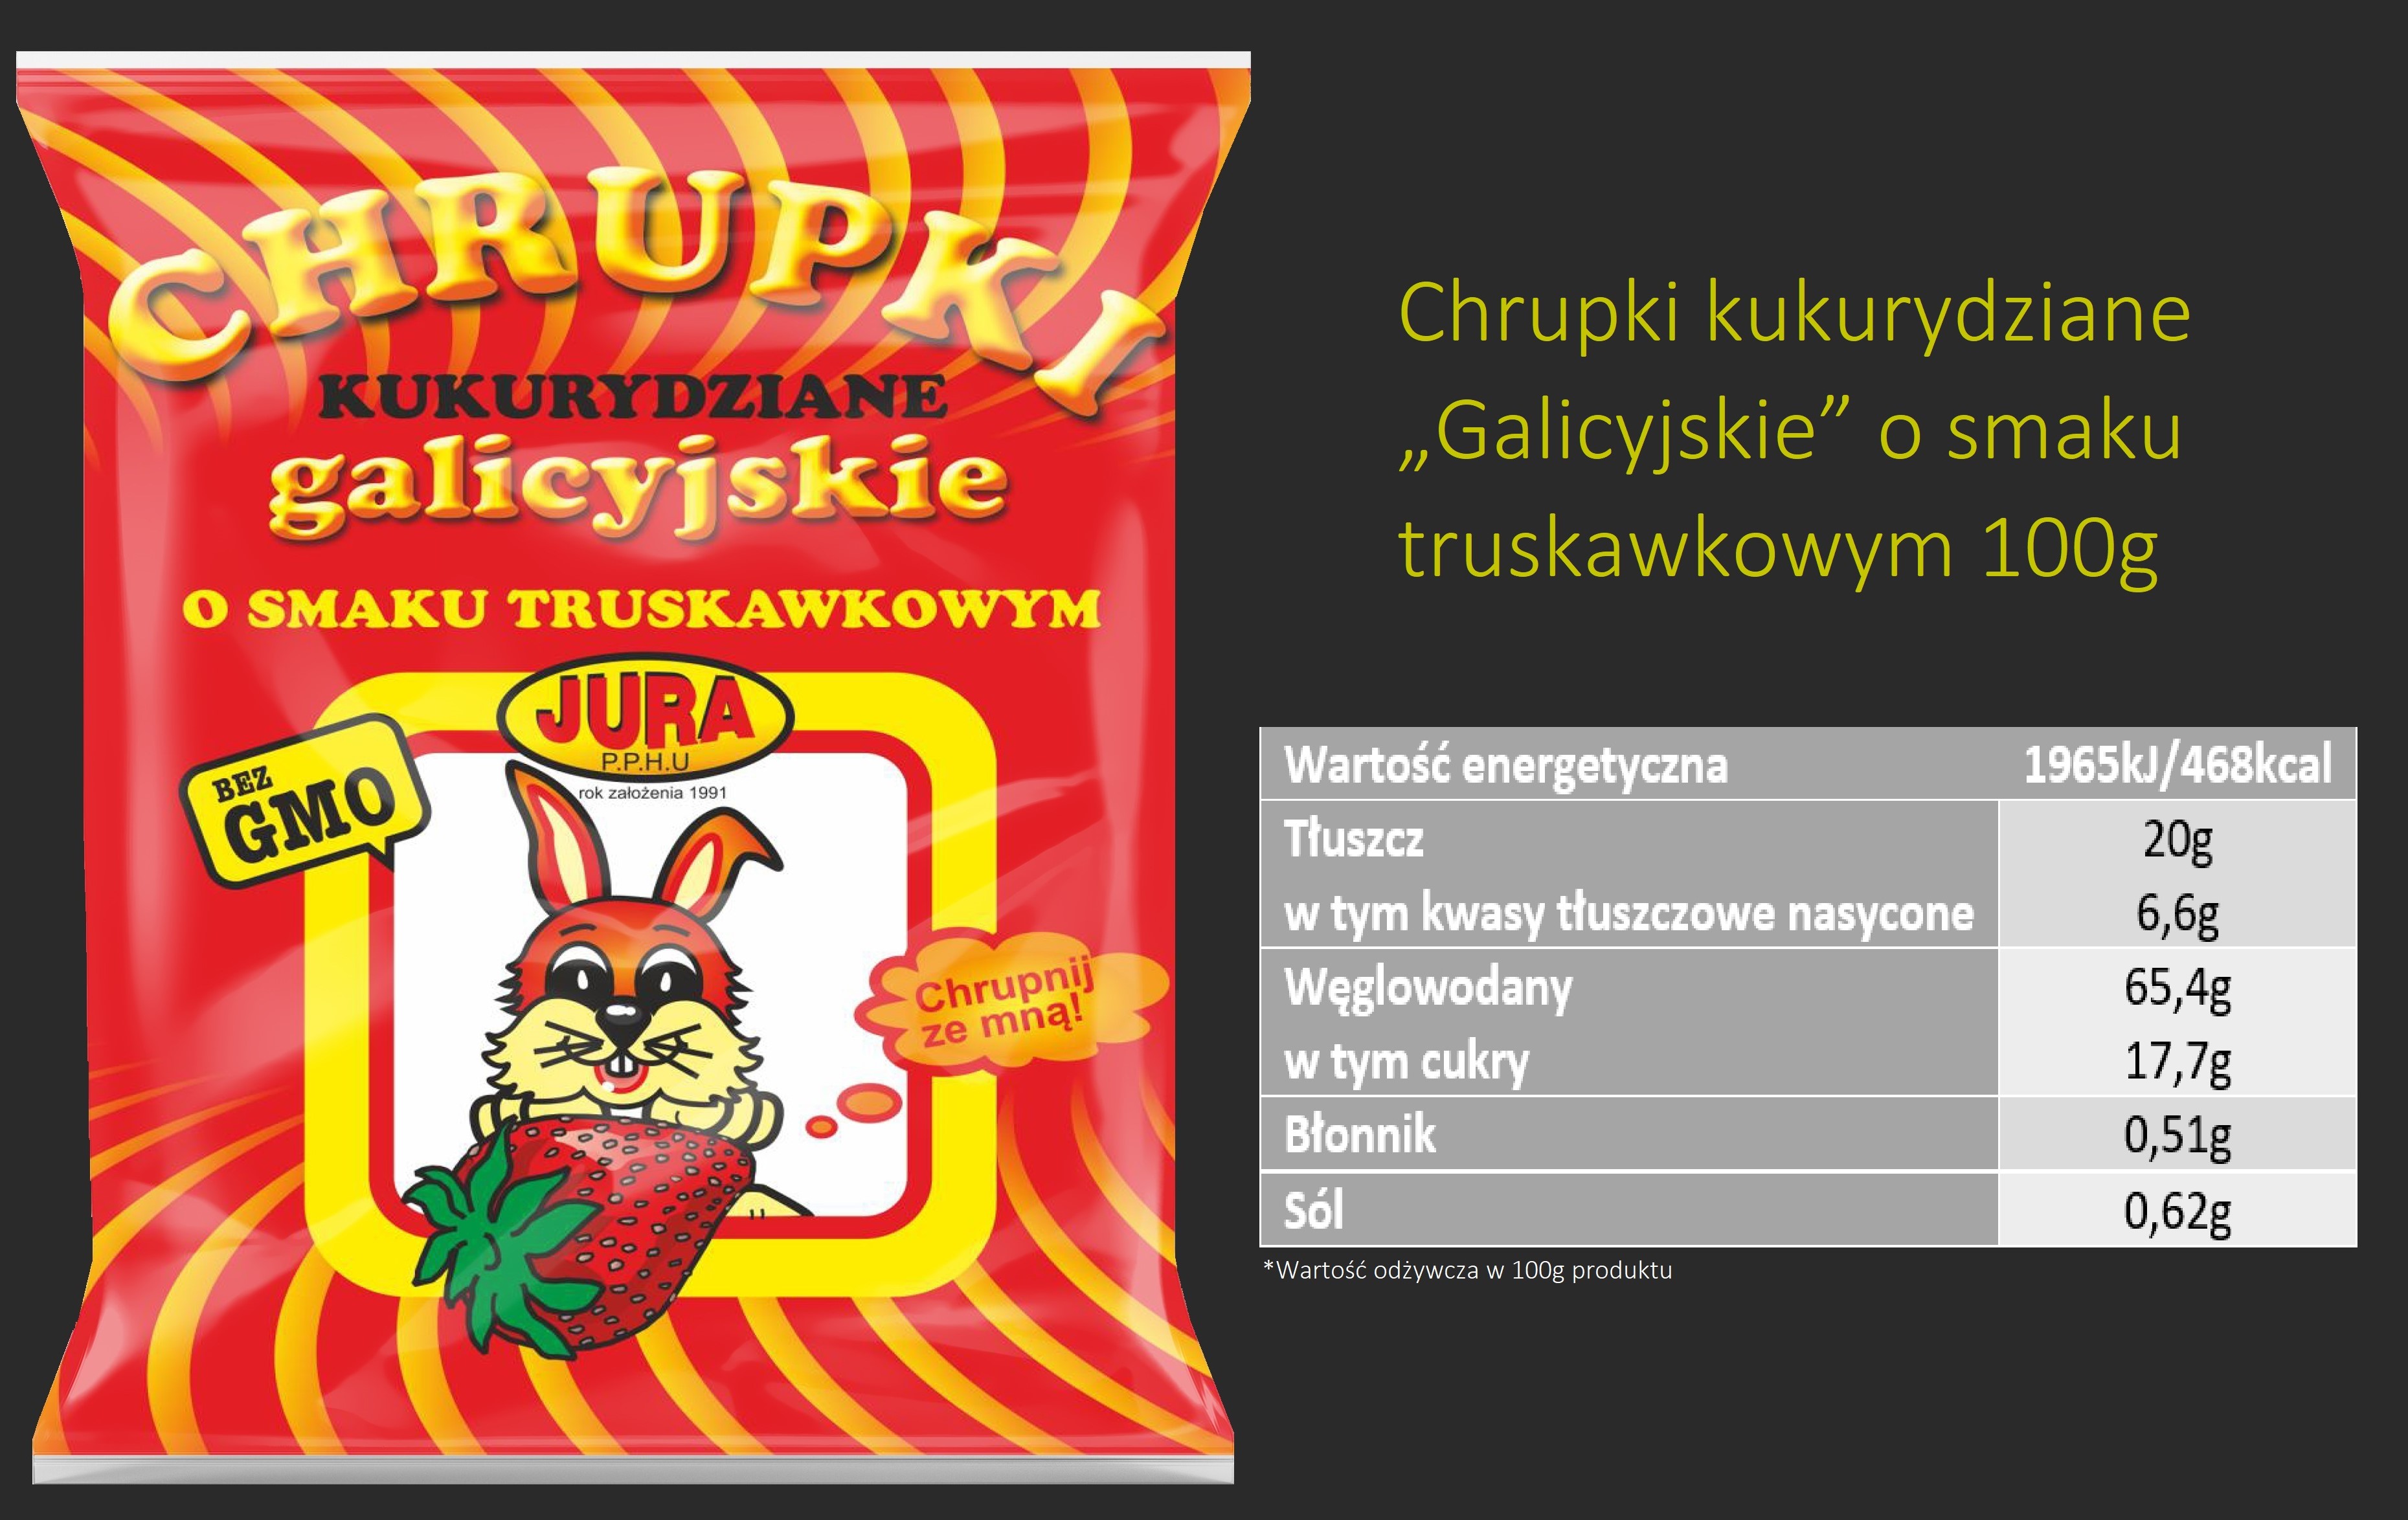 TruskawkaOK